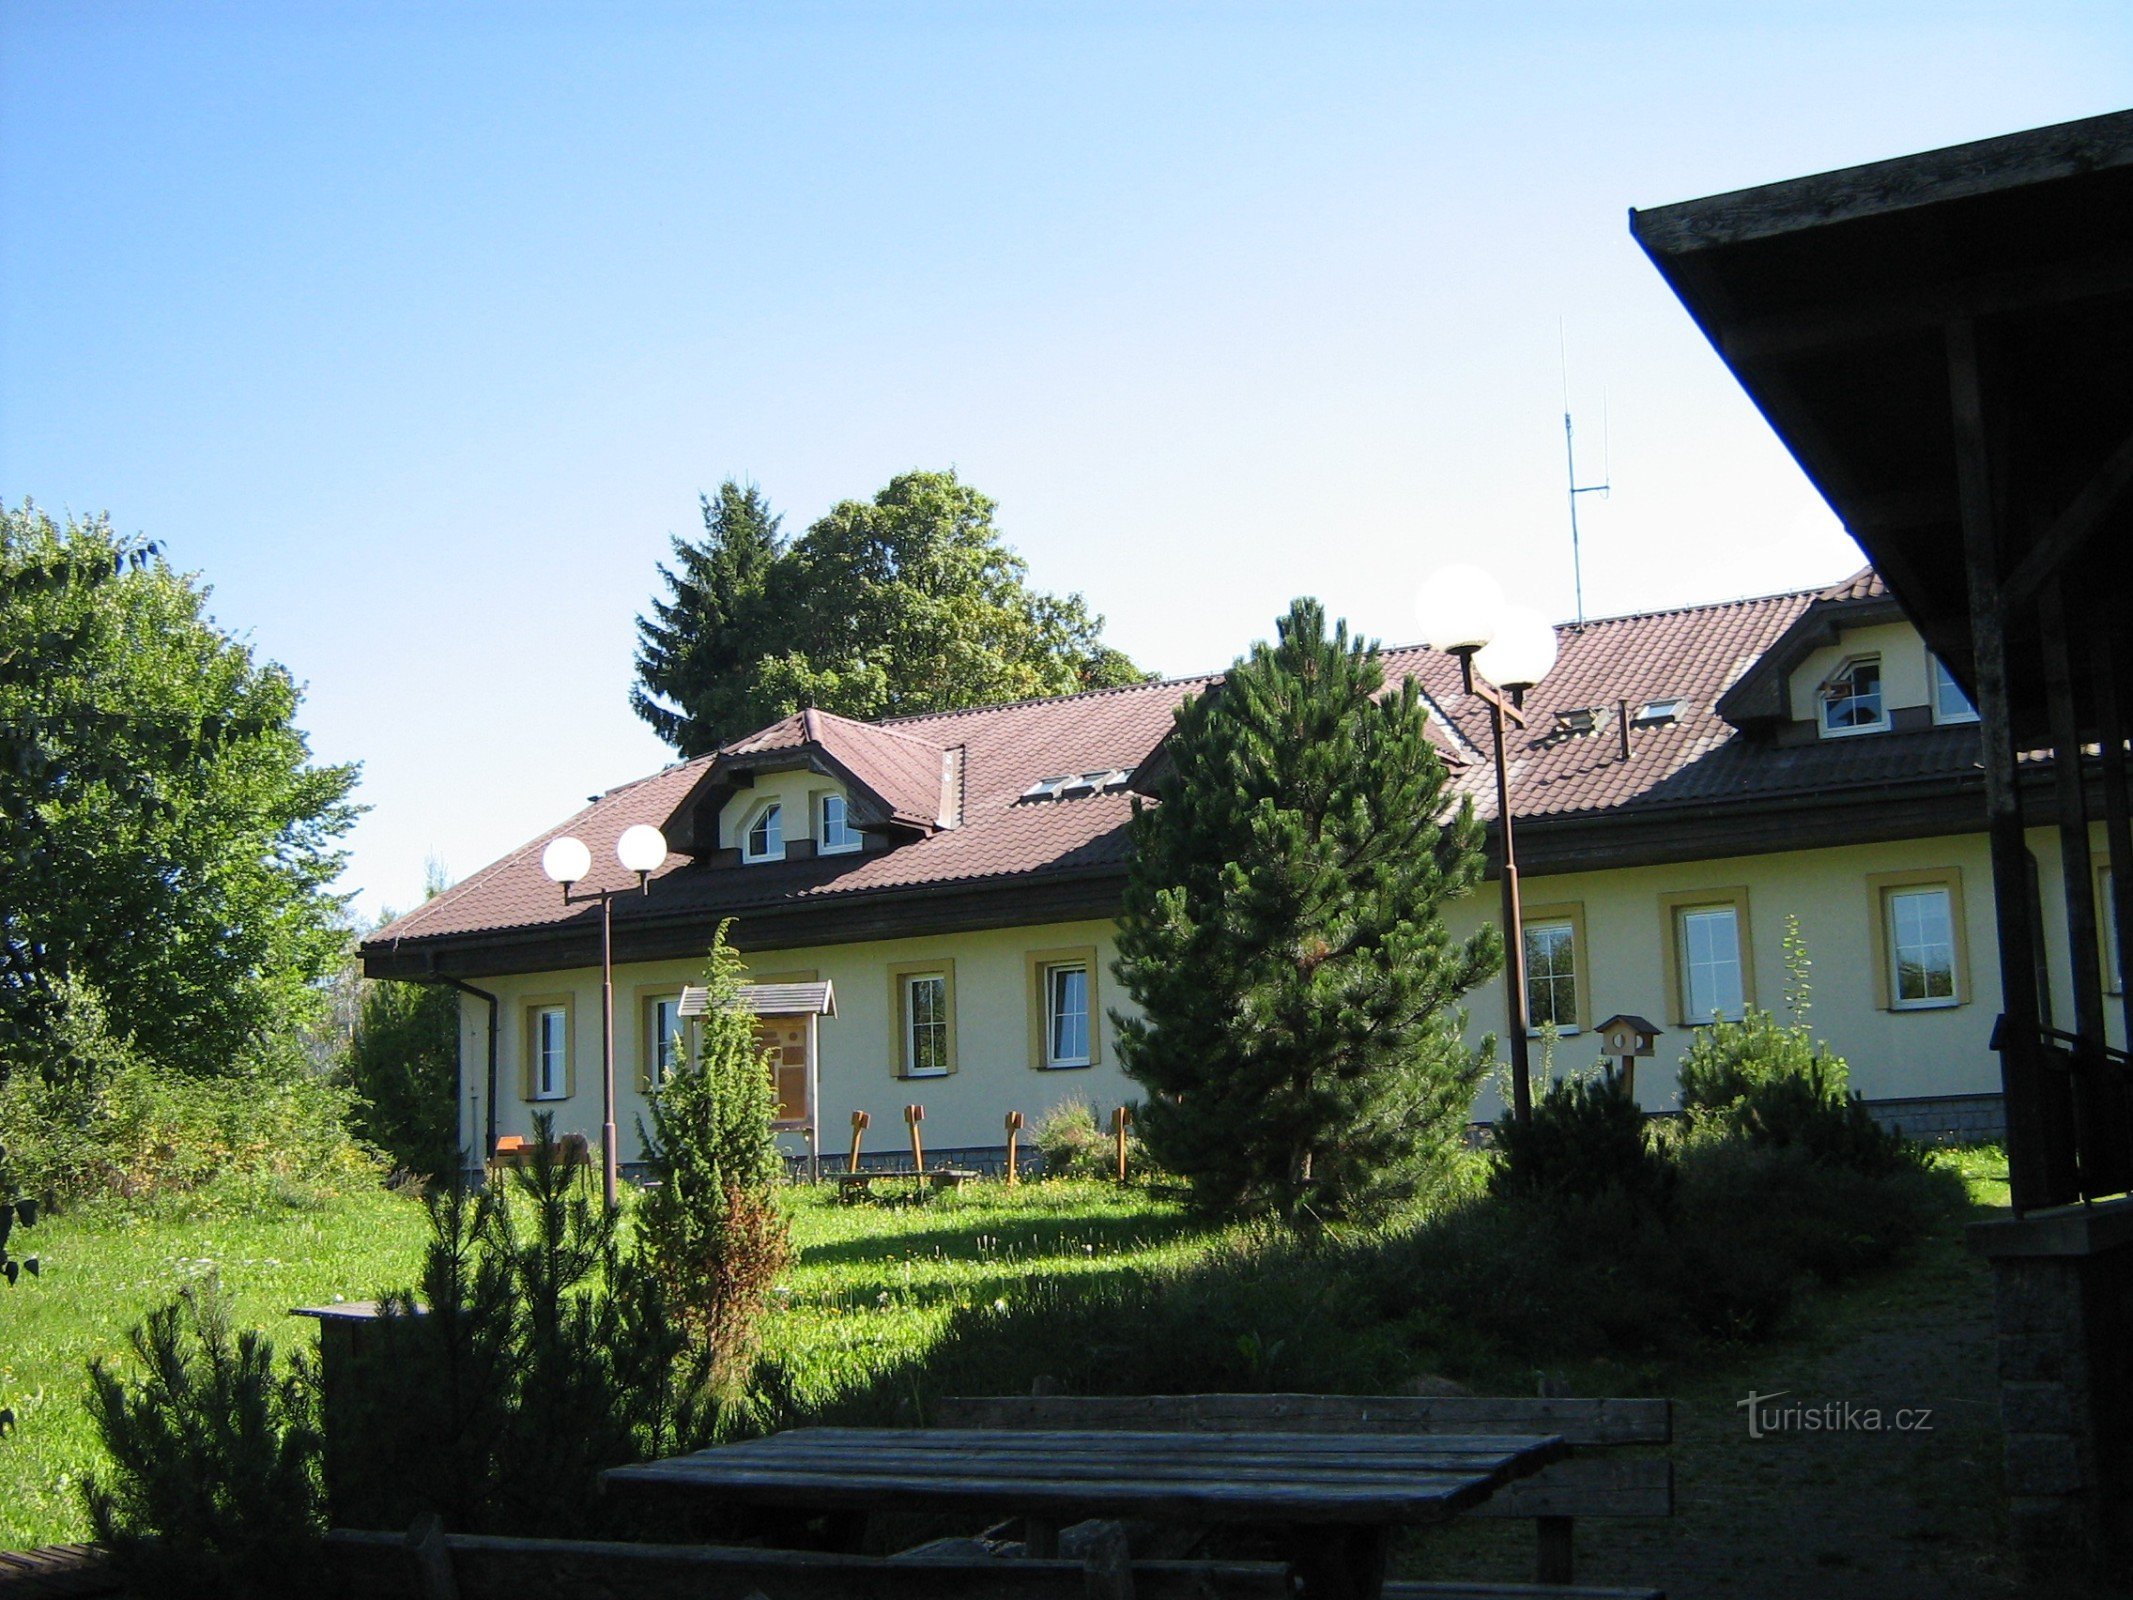 Centro de informações do Parque Nacional Šumava Kašperské Hory